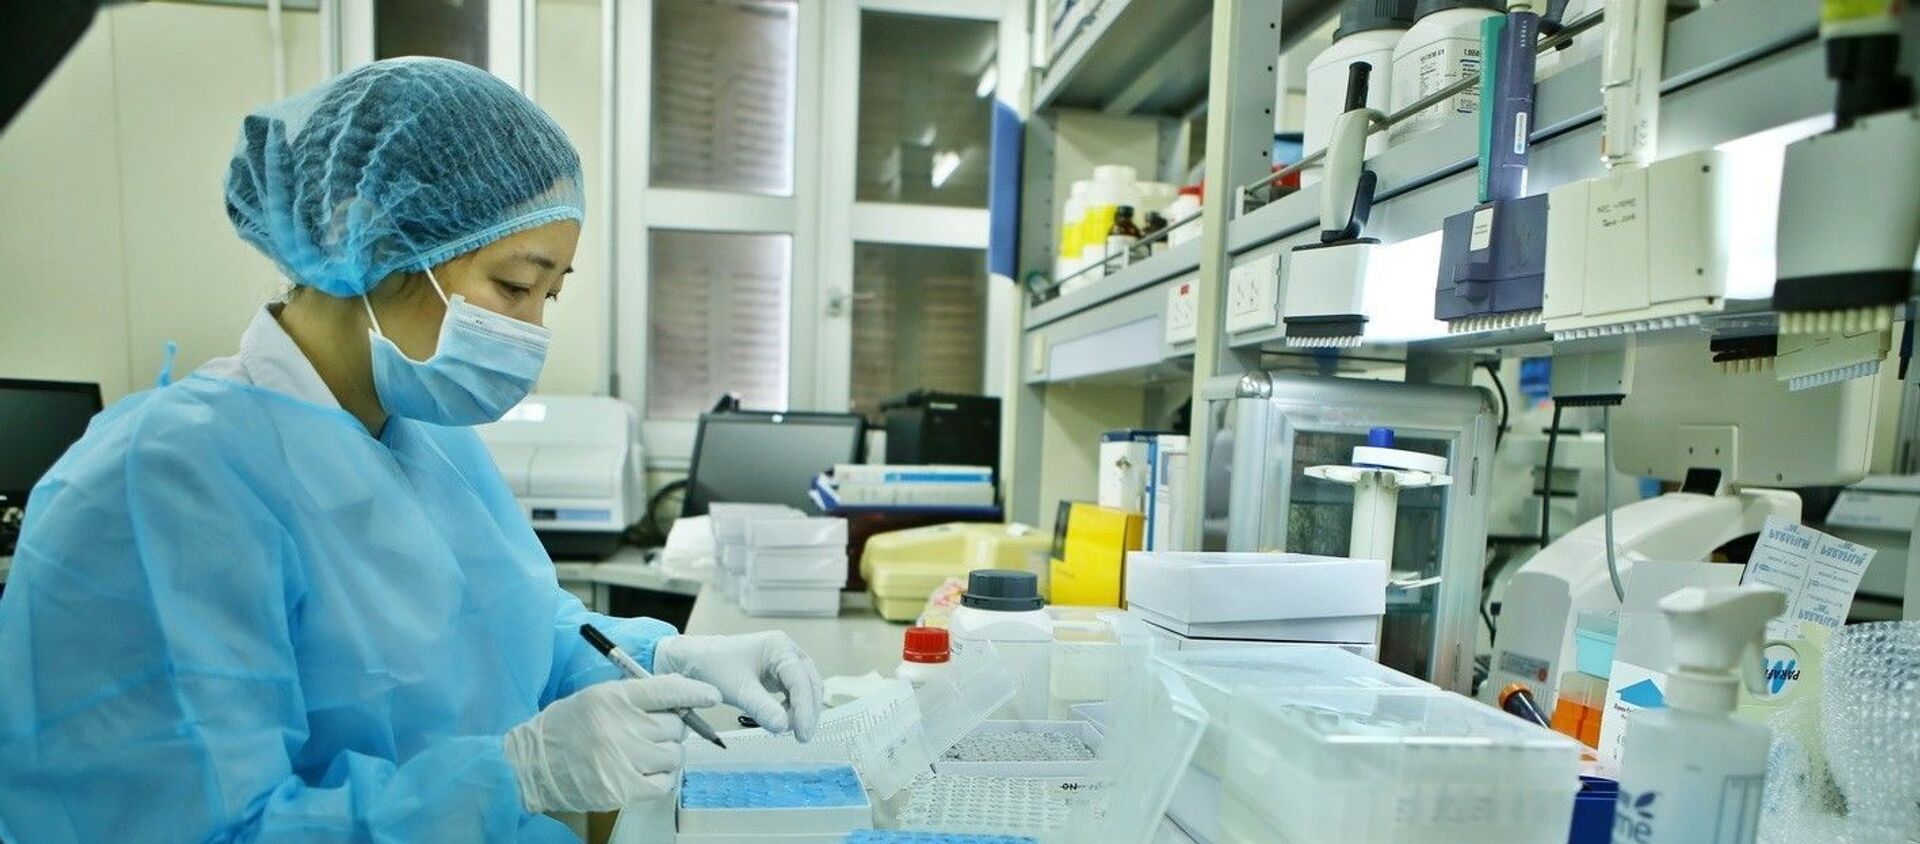 Thành tựu đặc biệt quan trọng của Viện trong phòng chống COVID-19 năm 2020 là phân lập thành công virus SARS-CoV-2 để sản xuất các test/kit xét nghiệm COVID-19 và tạo tiền đề quan trọng cho việc nghiên cứu, điều chế vaccine COVID-19.  - Sputnik Việt Nam, 1920, 05.12.2020